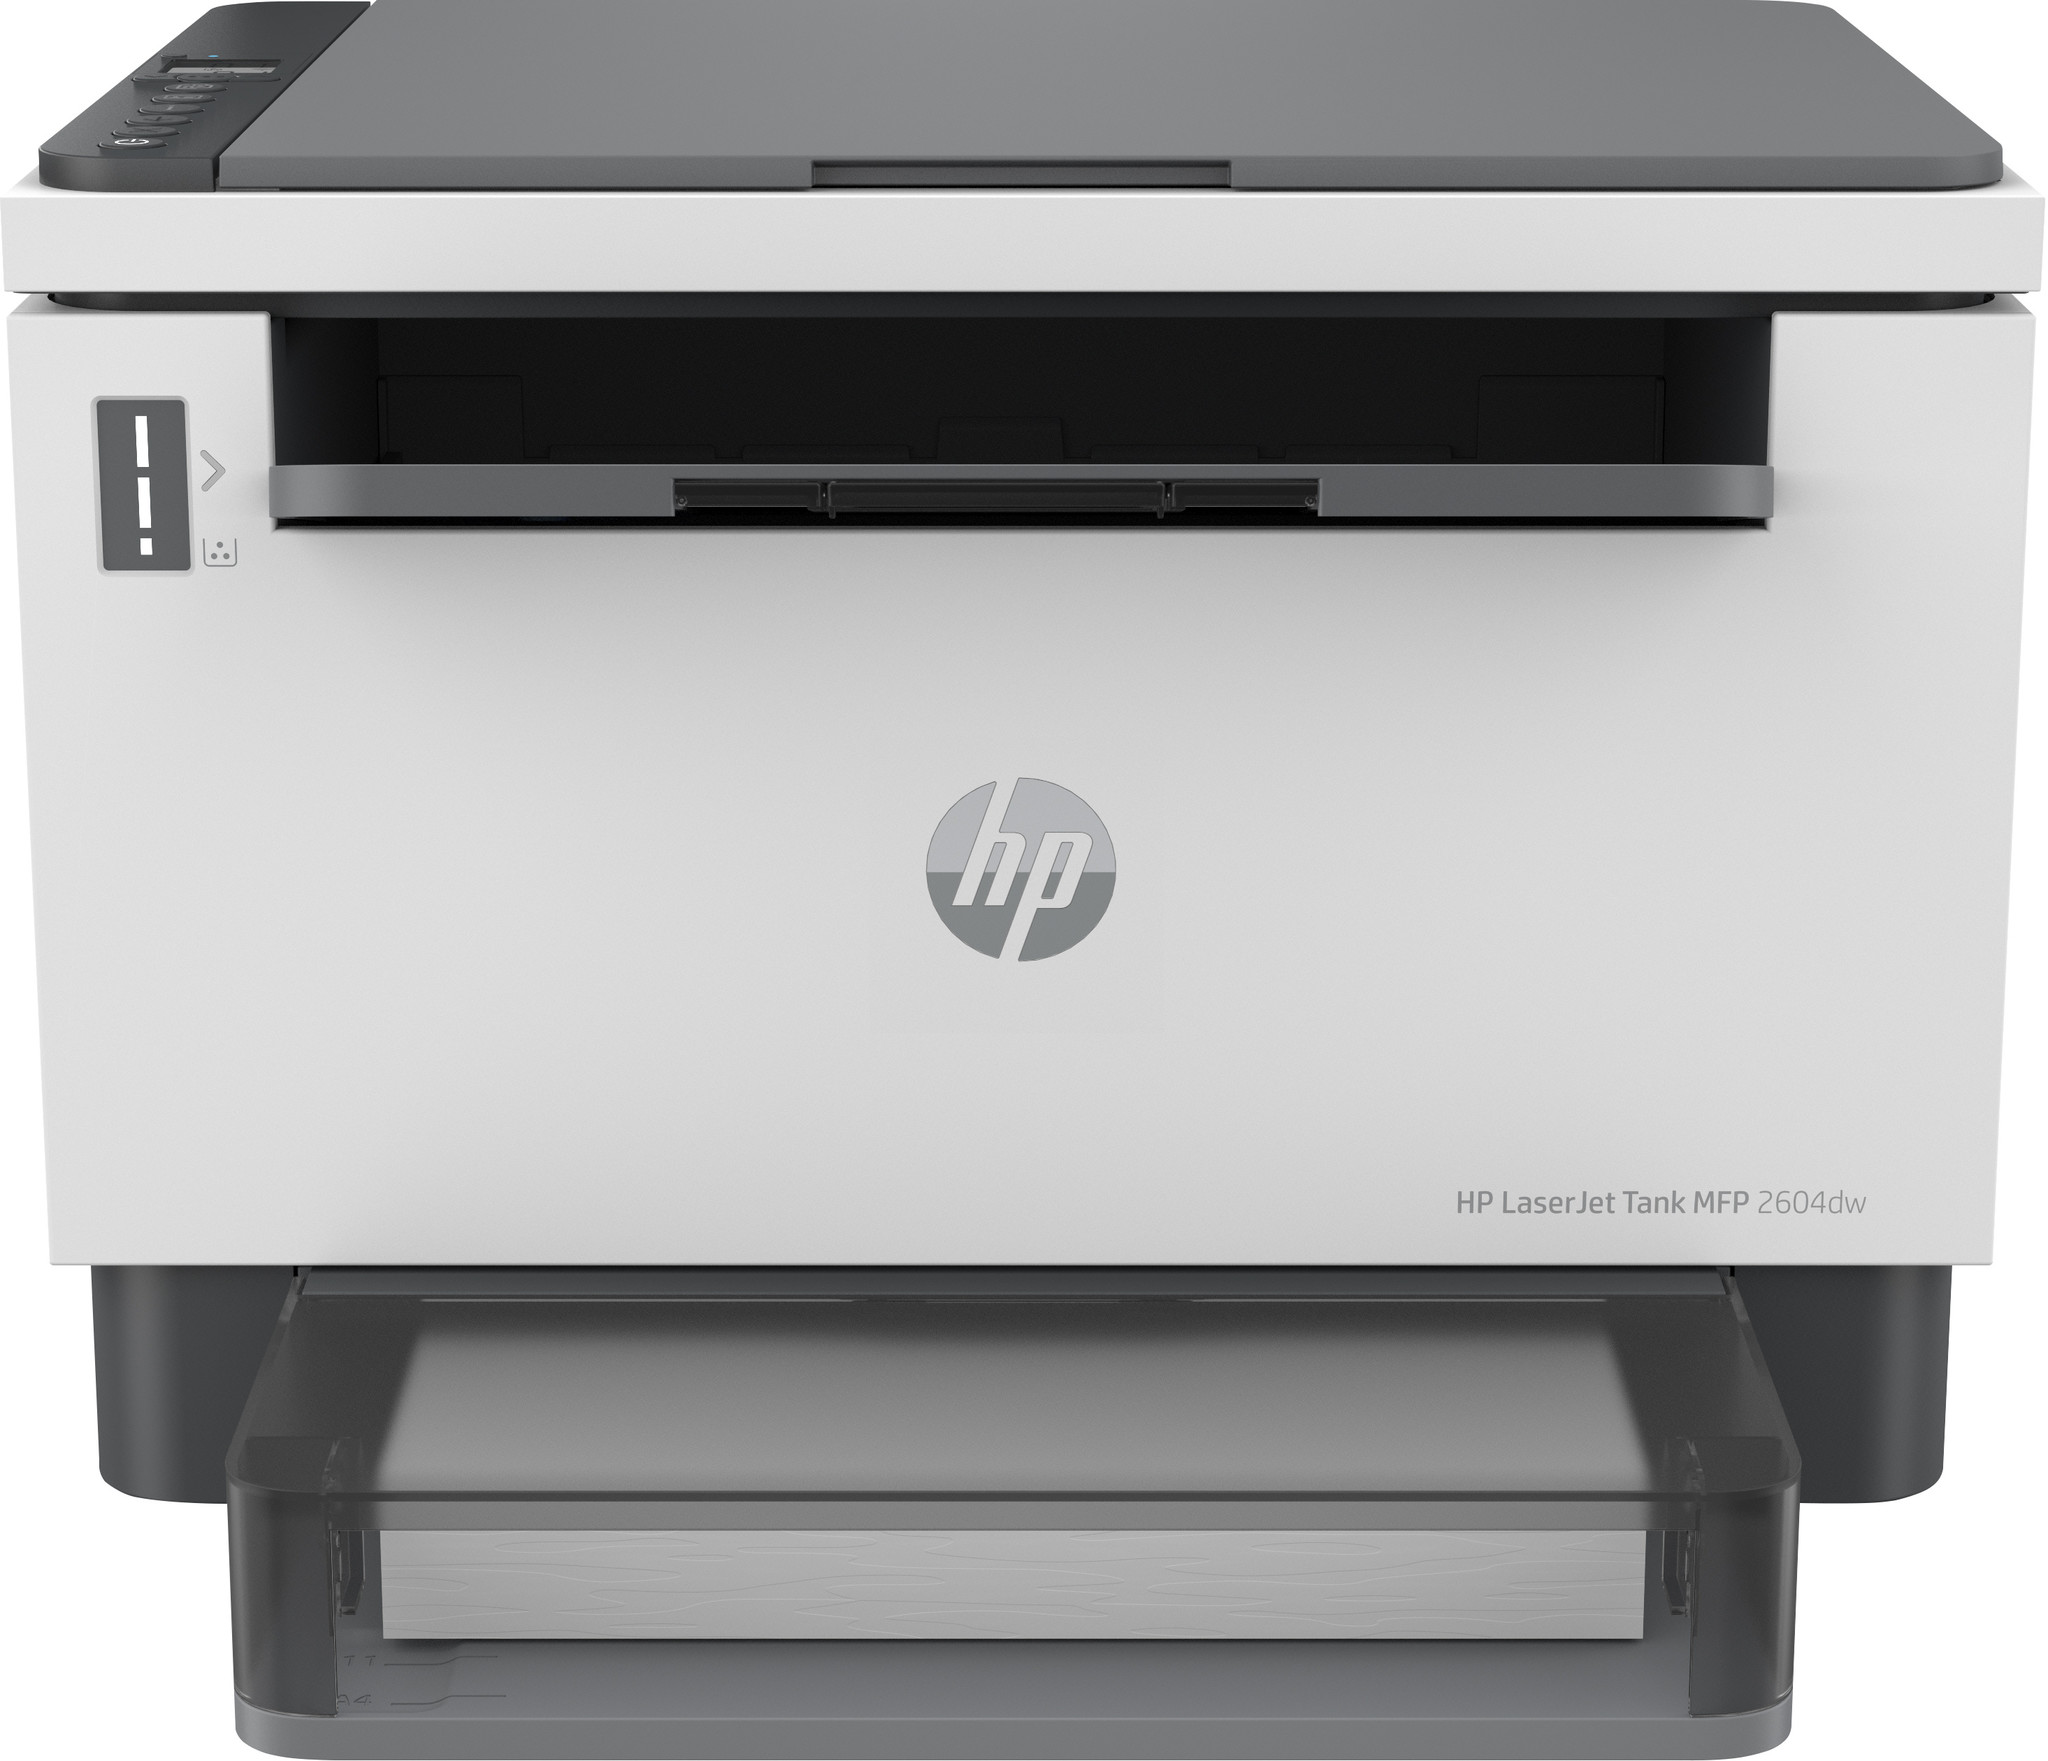 Bestuiven metgezel Literaire kunsten Hewlett & Packard INC. HP LaserJet Tank MFP 2604dw printer, Zwart-wit,  Printer voor Bedrijf, Draadloos; Dubbelzijdig printen; Scannen naar e-mail;  Scannen naar pdf | My Media Center B.V.